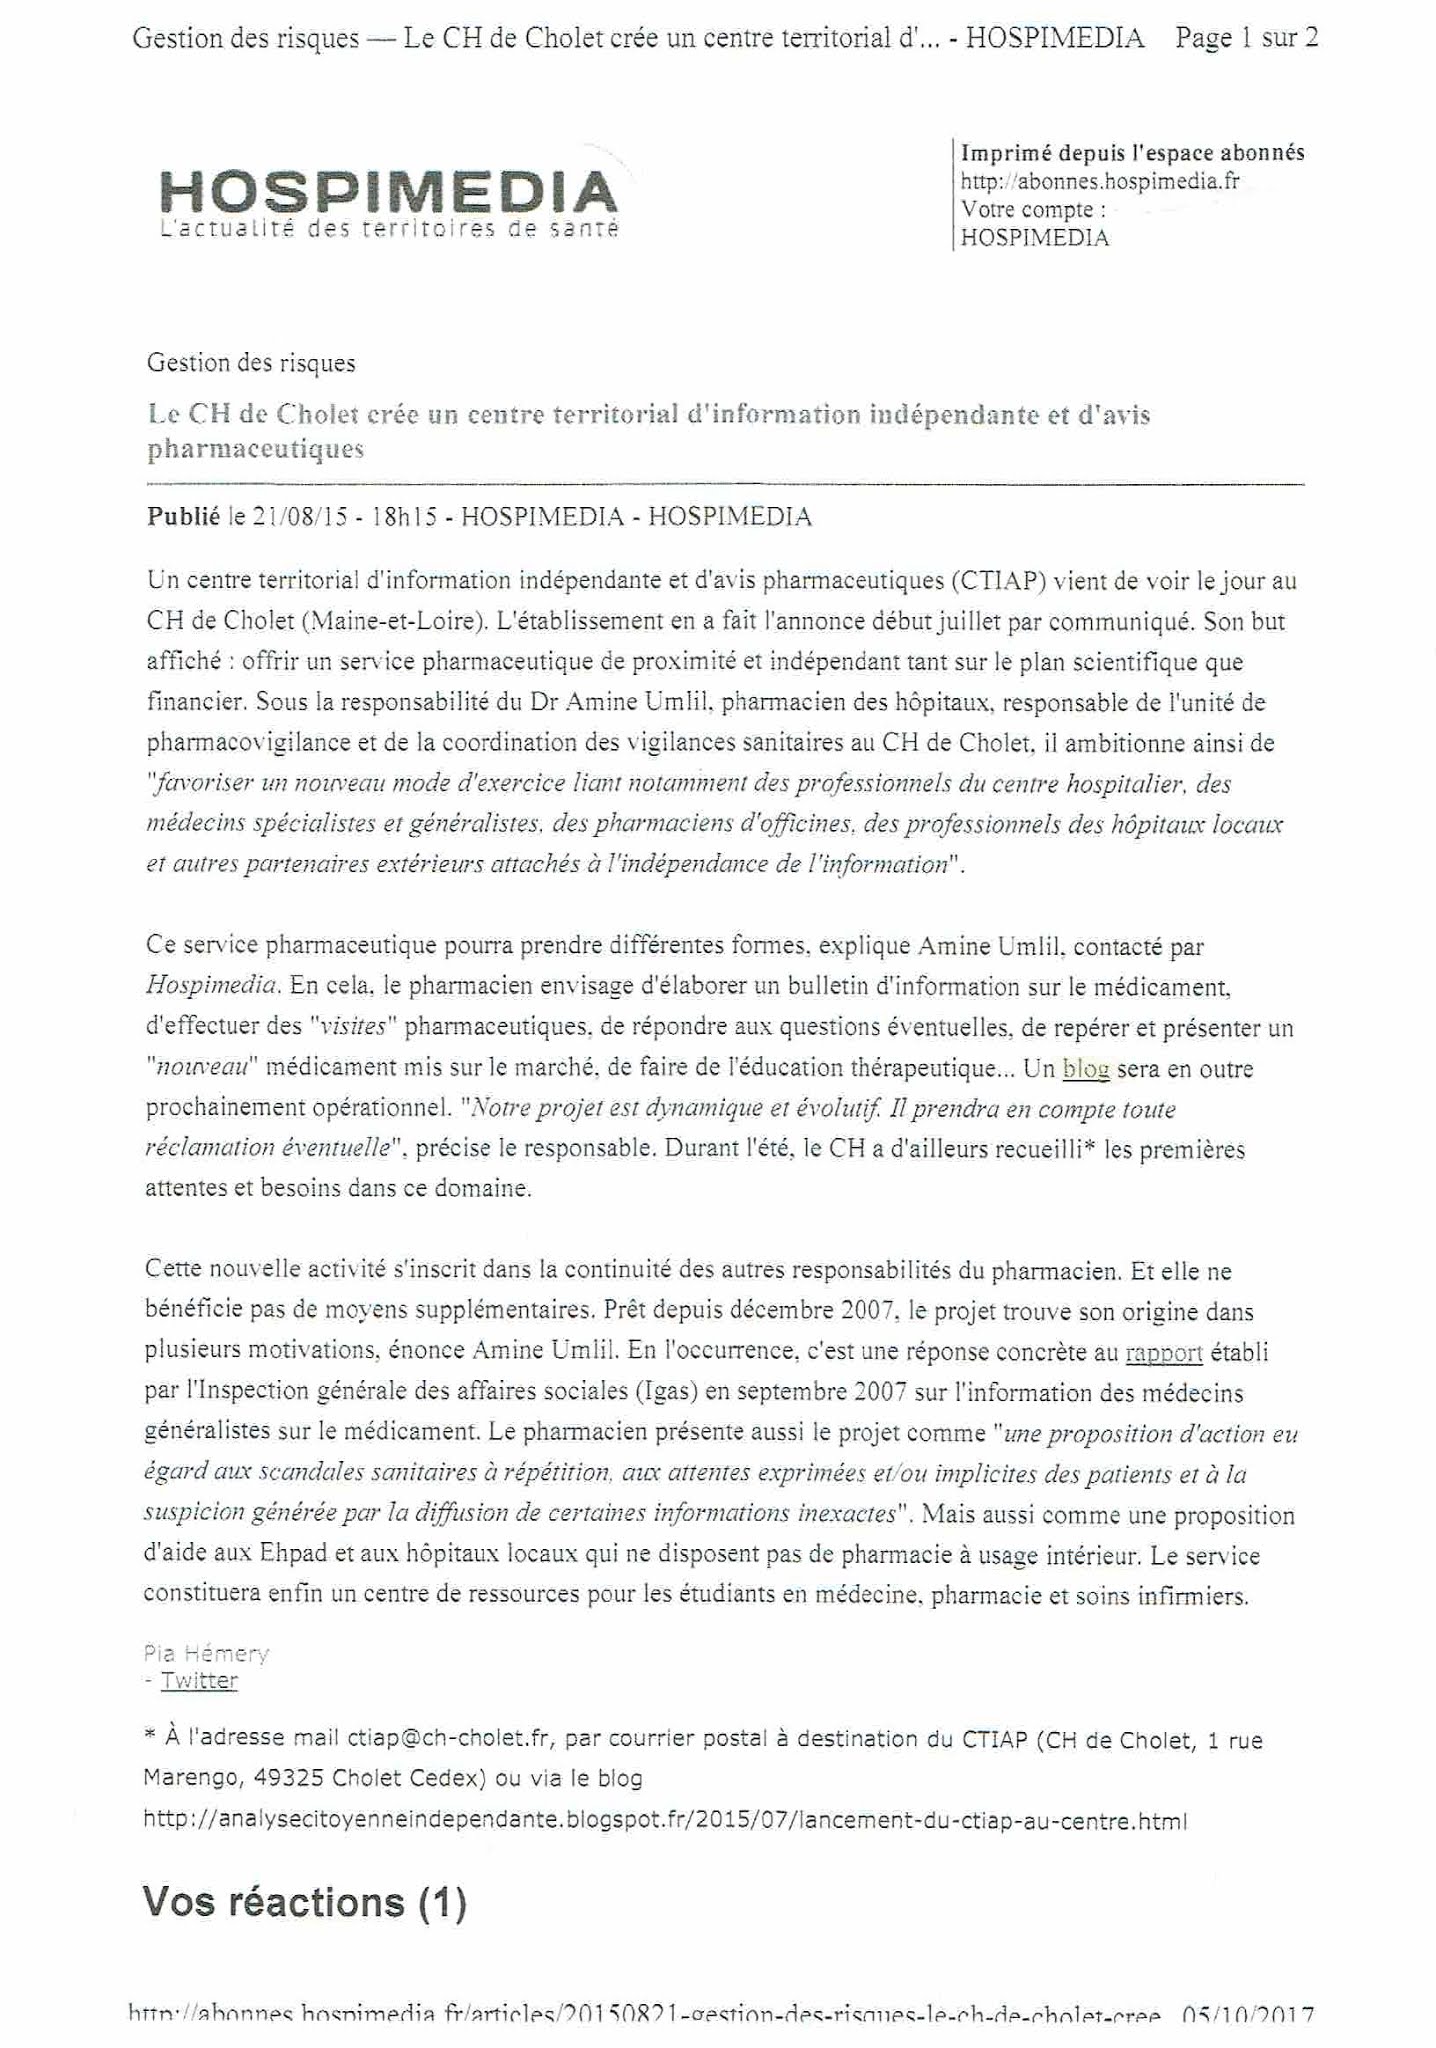 ARTICLES du Dr Amine UMLIL du CTIAP de CHOLET -1- - Page 3 Hospim11